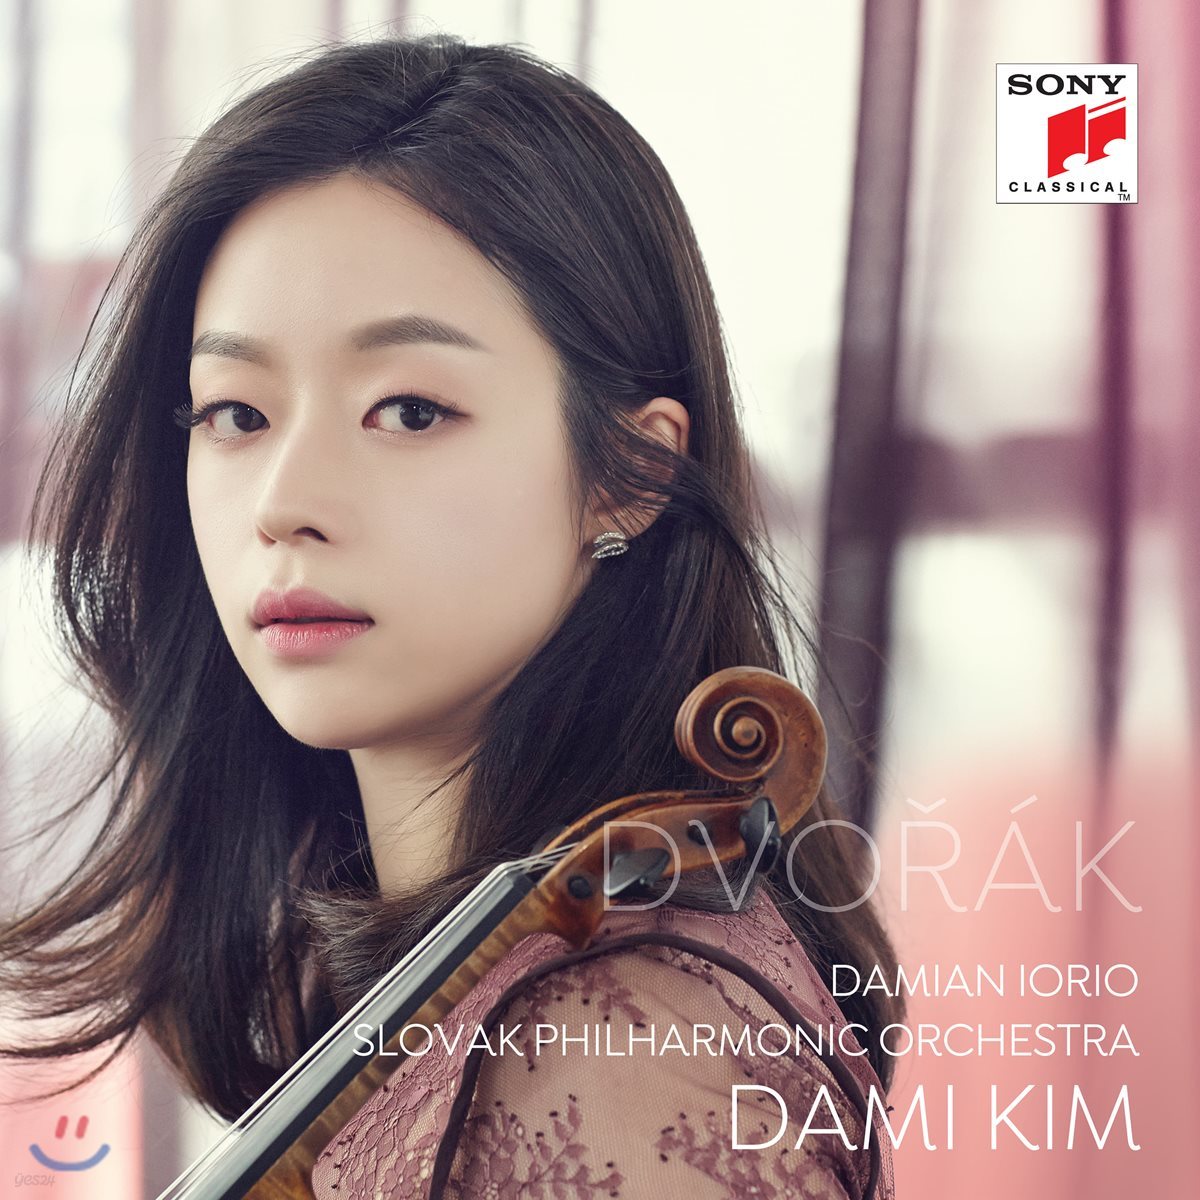 김다미 - 드보르작: 바이올린 협주곡, 로망스, 유모레스크 (Dvorak: Violin Concerto, Romance, Humoresque)